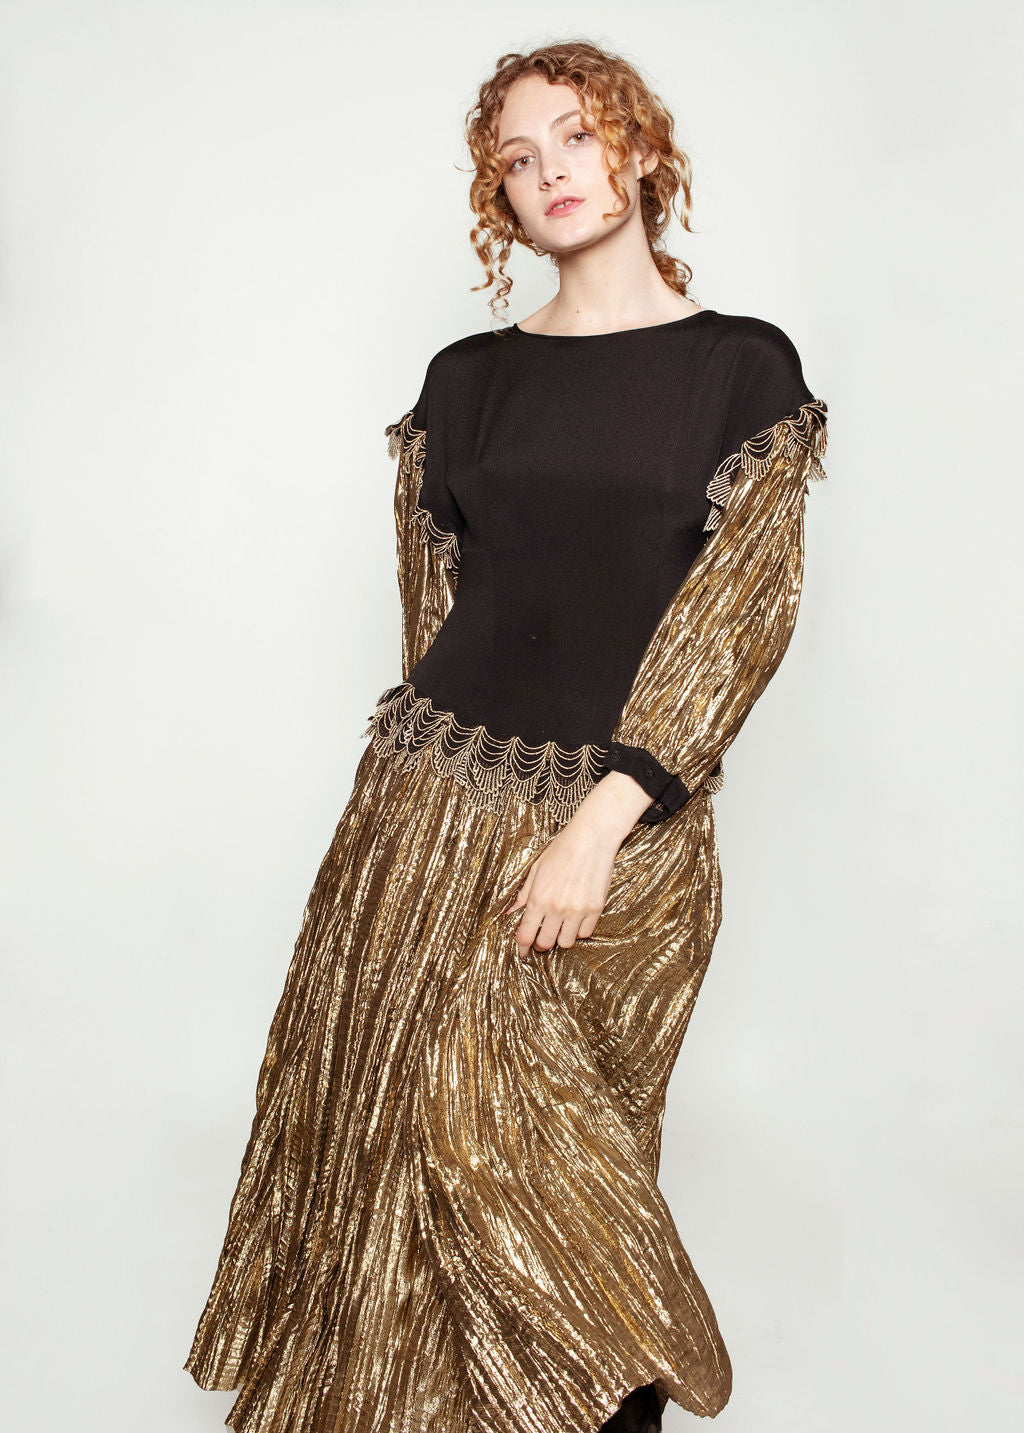 Karl Lagerfeld for Chloe Black & Liquid Gold Dress